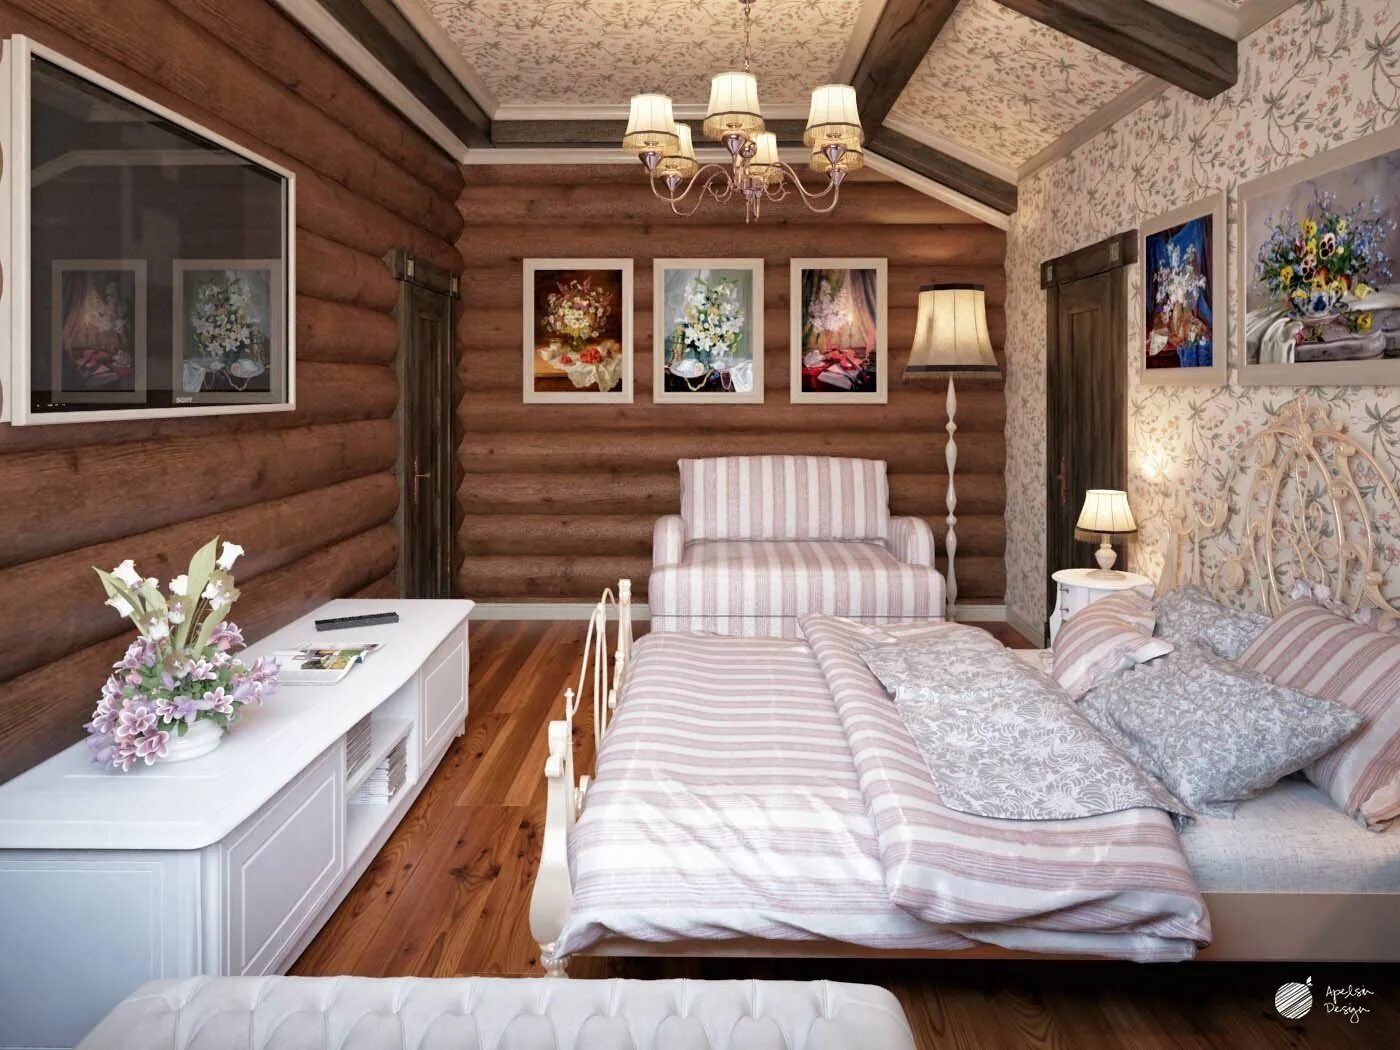 Спальня в доме из бревна. Спальня в бревенчатом доме. Интерьер спальни в доме из бревна. Спальня в деревянном доме из бревна.